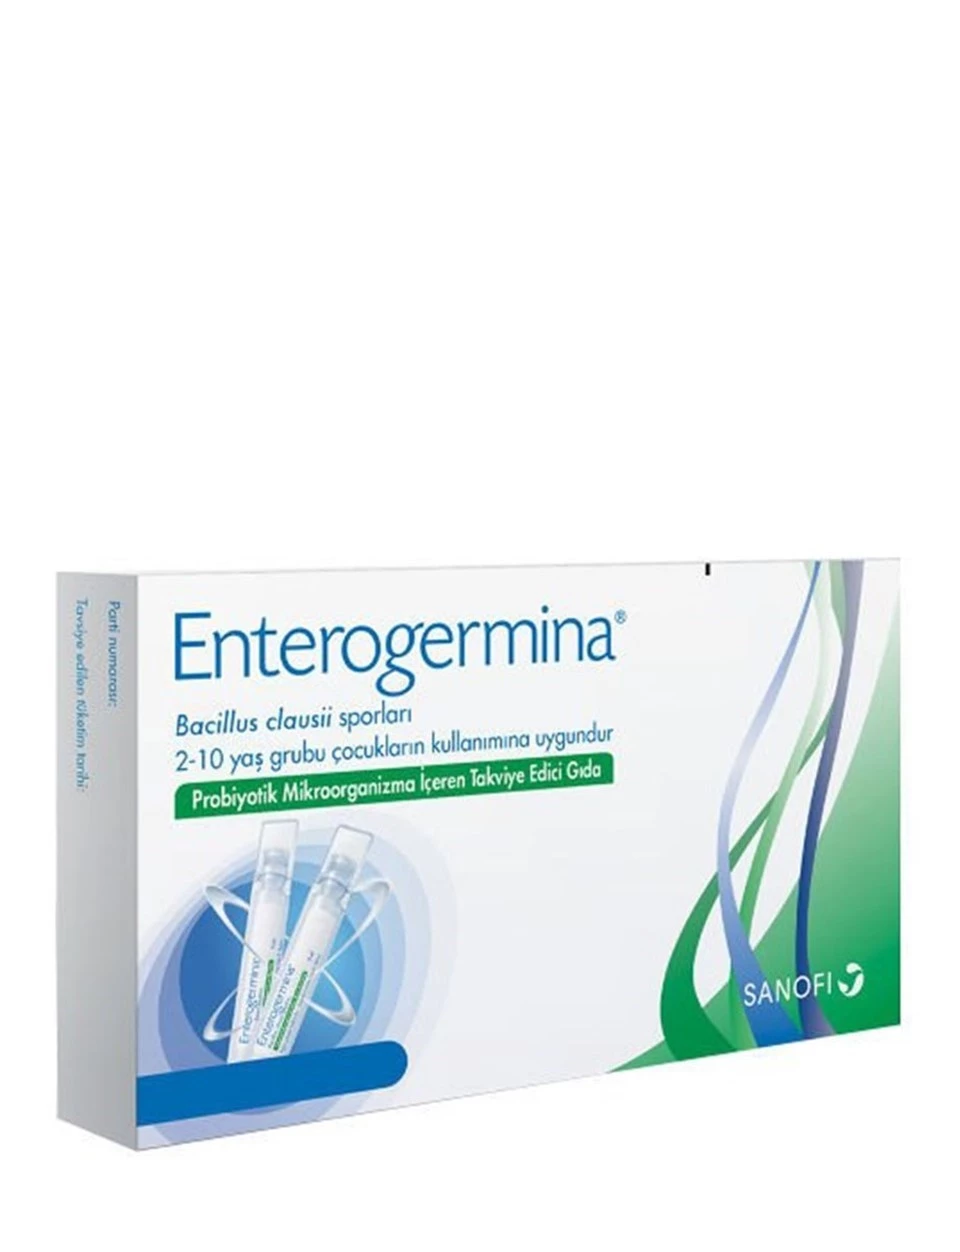 Enterogermina Çocuklar için Takviye Edici Gıda 50ml ( 5ml x 10 flakon )